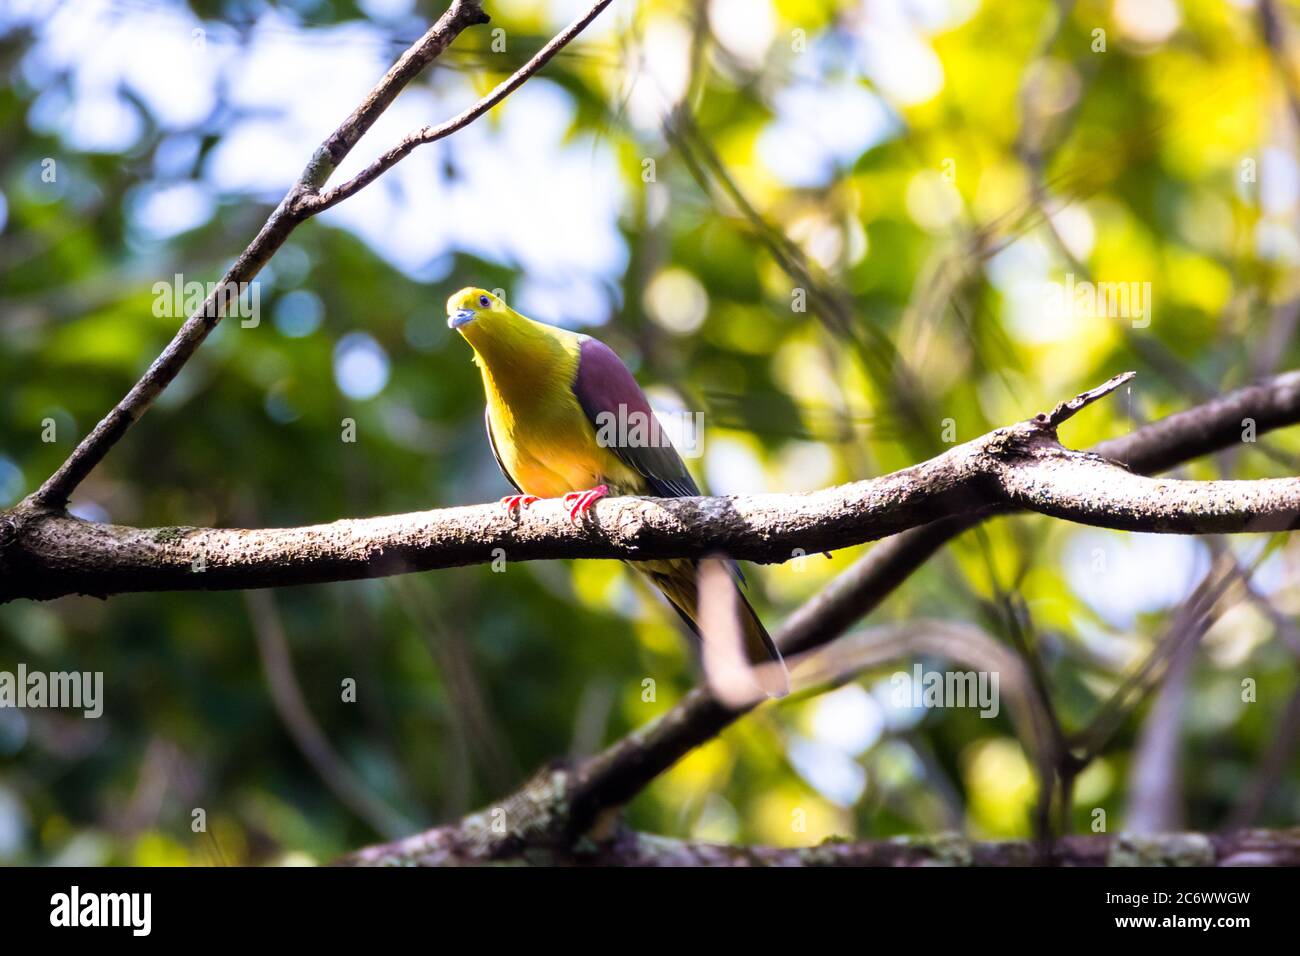 Keil-tailed Green-Taube oder Kokla Green Taube (Treron sphenurus) oder Hill Taube auf Baum Zweig Stockfoto